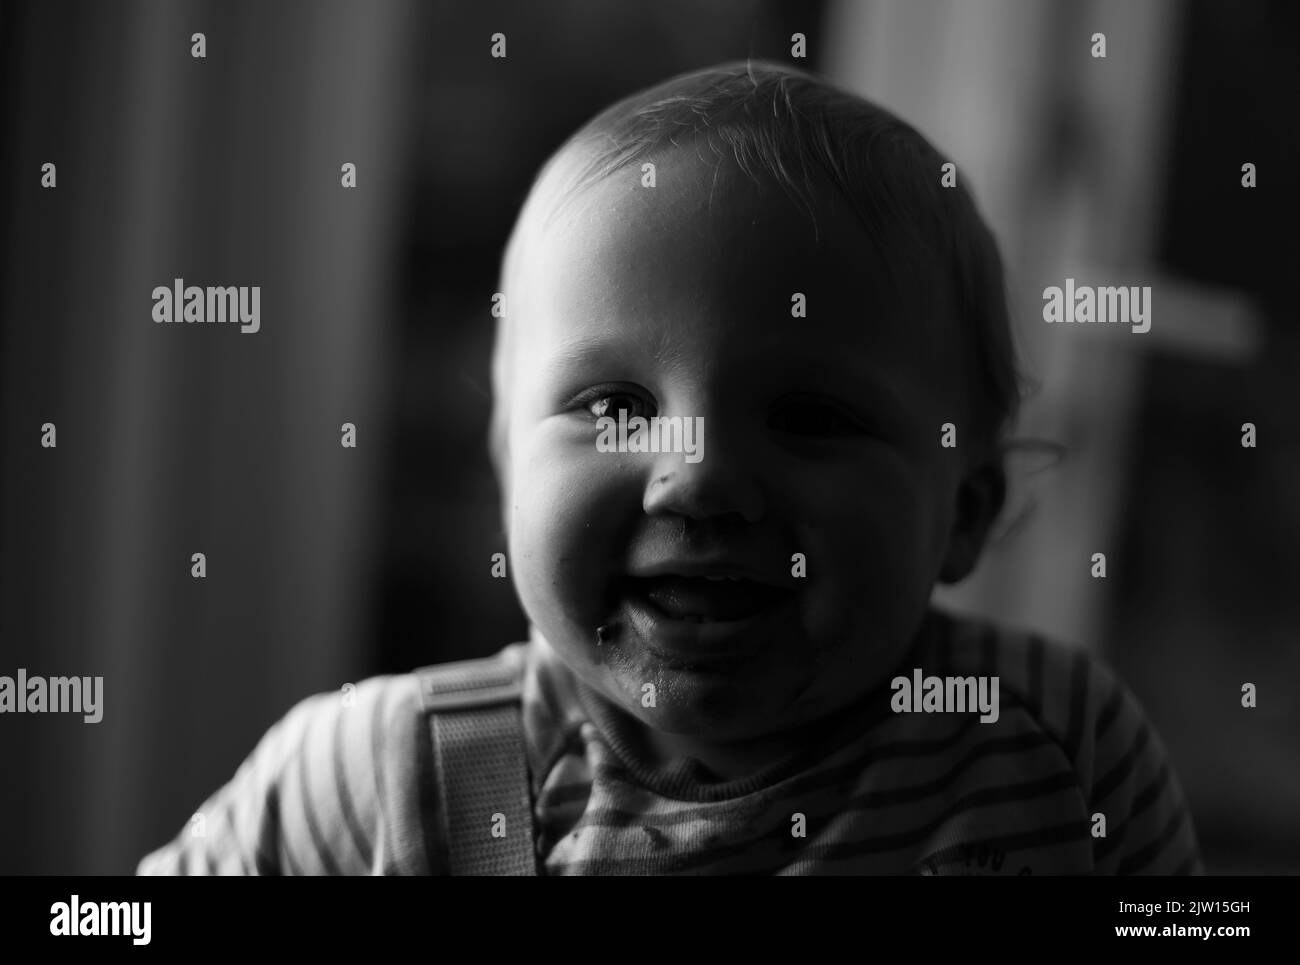 Kaukasisches Kleinkind männlich lächelt mit einem halb beleuchteten Gesicht, schwarz-weiß-Bild. Stockfoto